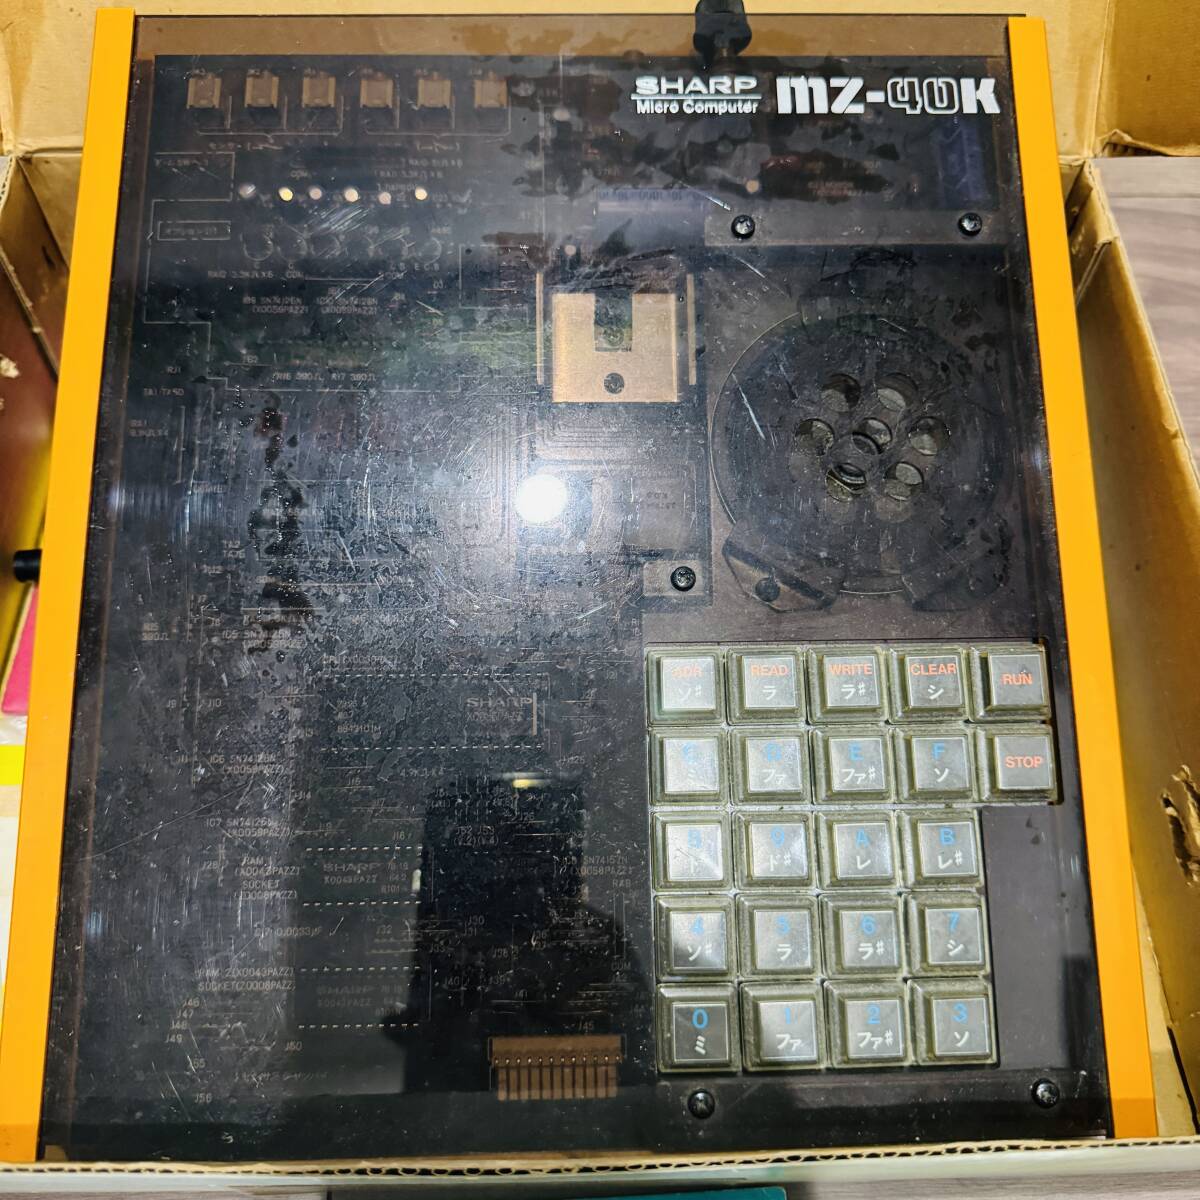  изначальный с коробкой SHARP sharp microcomputer ..MZ-40K 4 bit microcomputer комплект 1978 год продажа Showa Retro подлинная вещь 